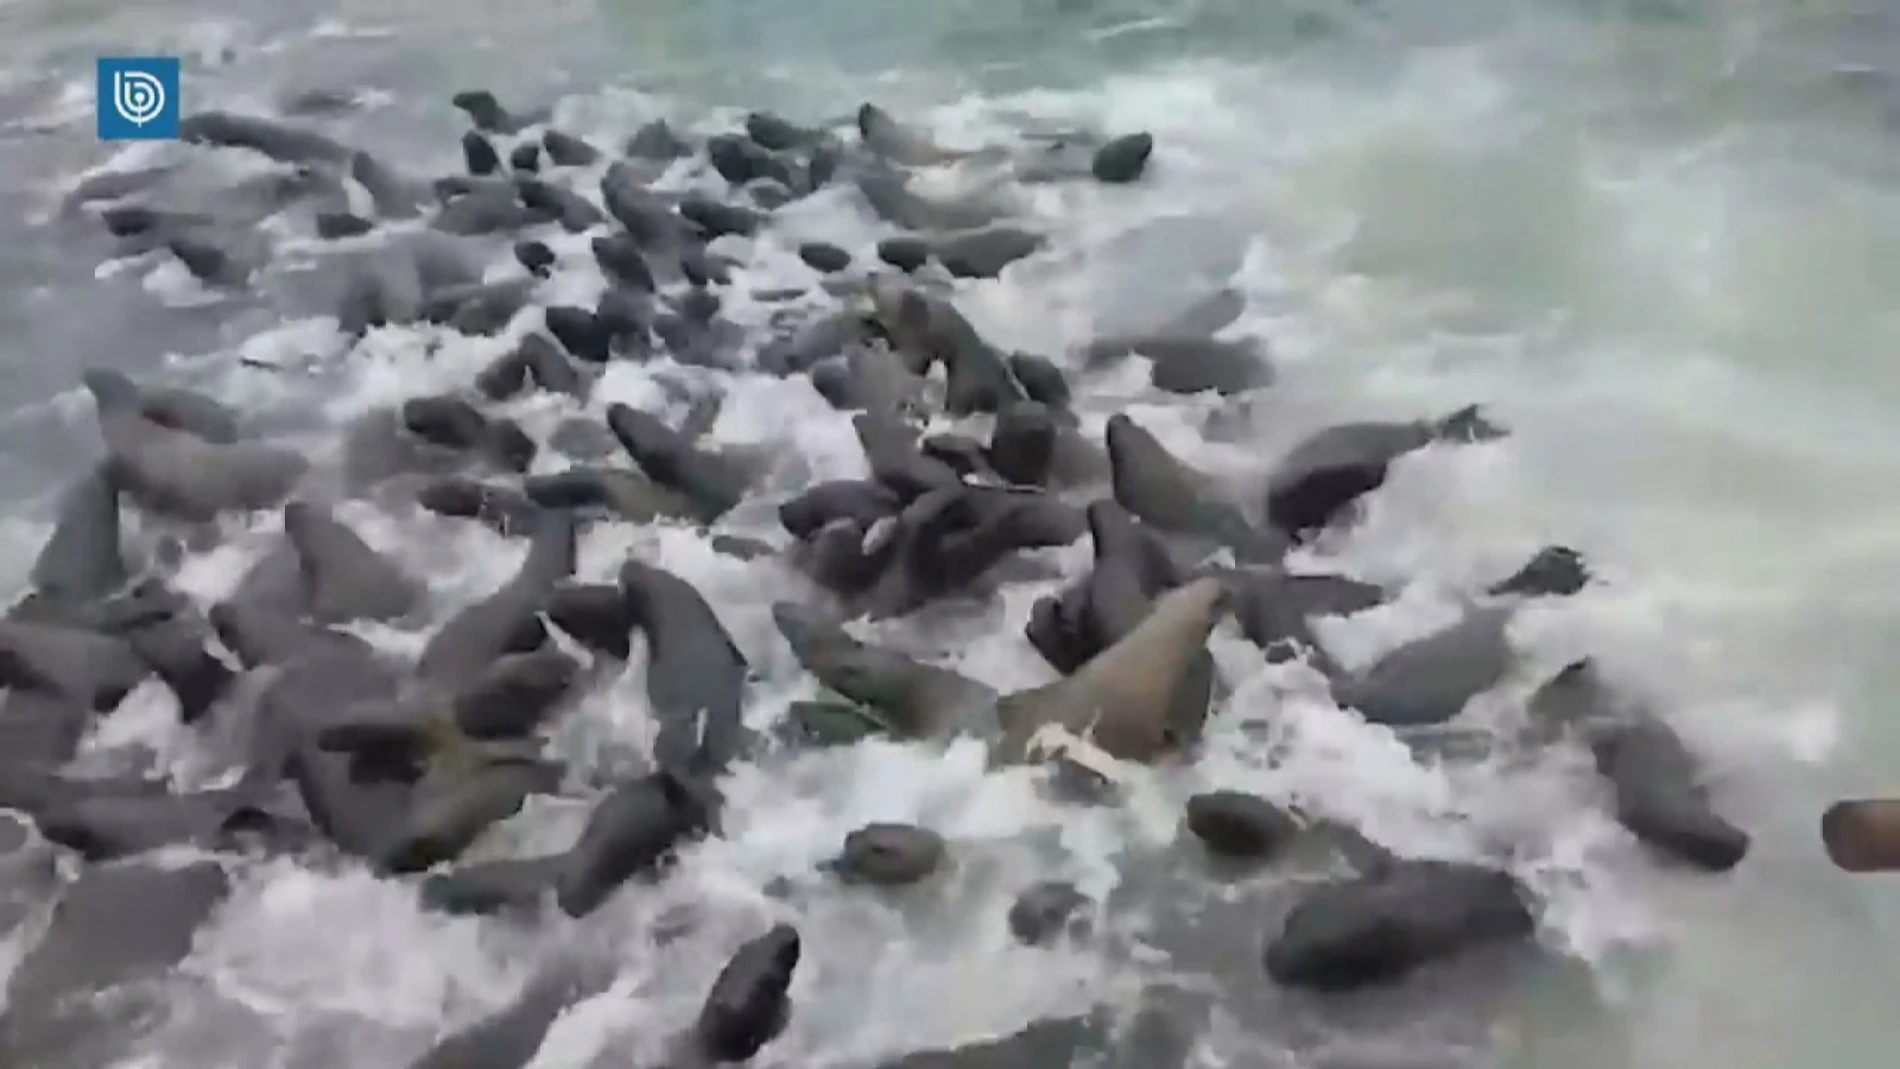 Decenas de leones marinos tratan de invadir un barco pesquero en Chile  huyendo de unas orcas